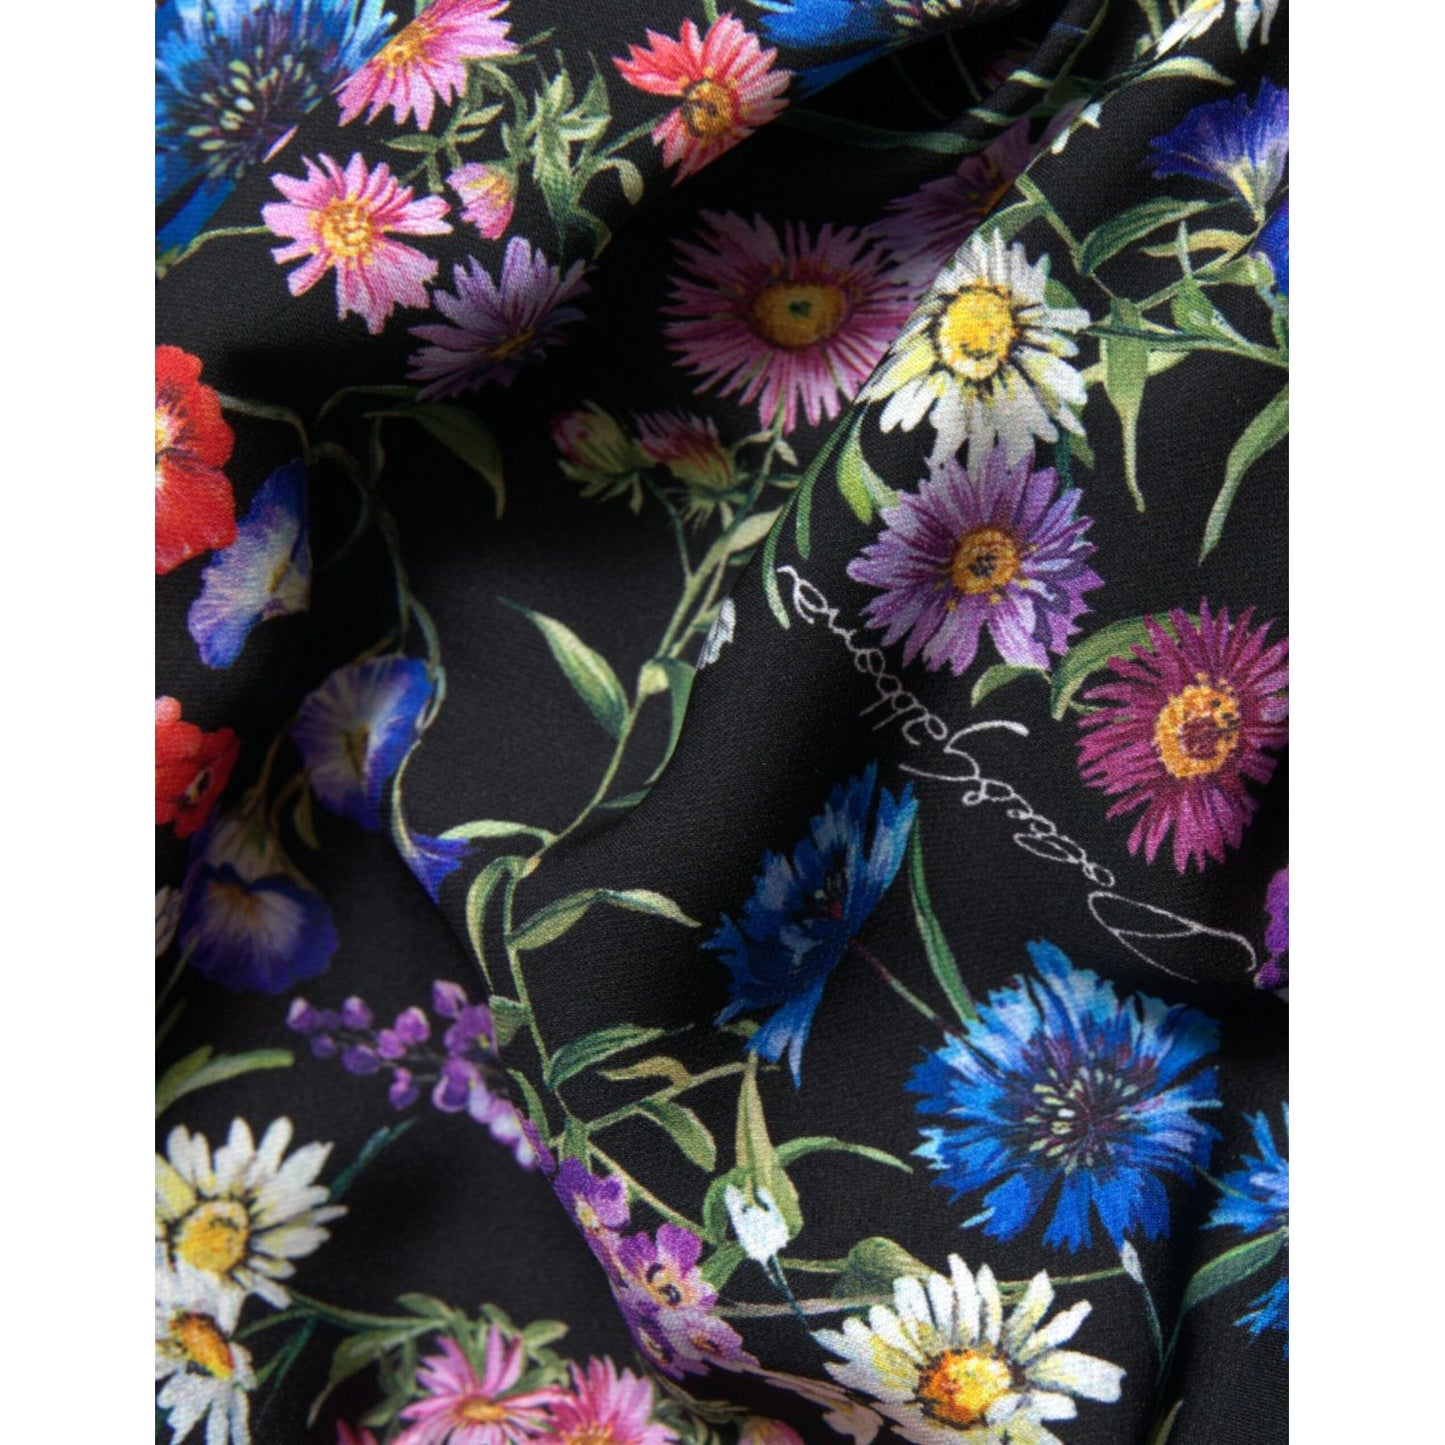 Dolce & Gabbana Elegant Floral Sheath Off Shoulder Dress multicolor-floral-sheath-off-shoulder-dress